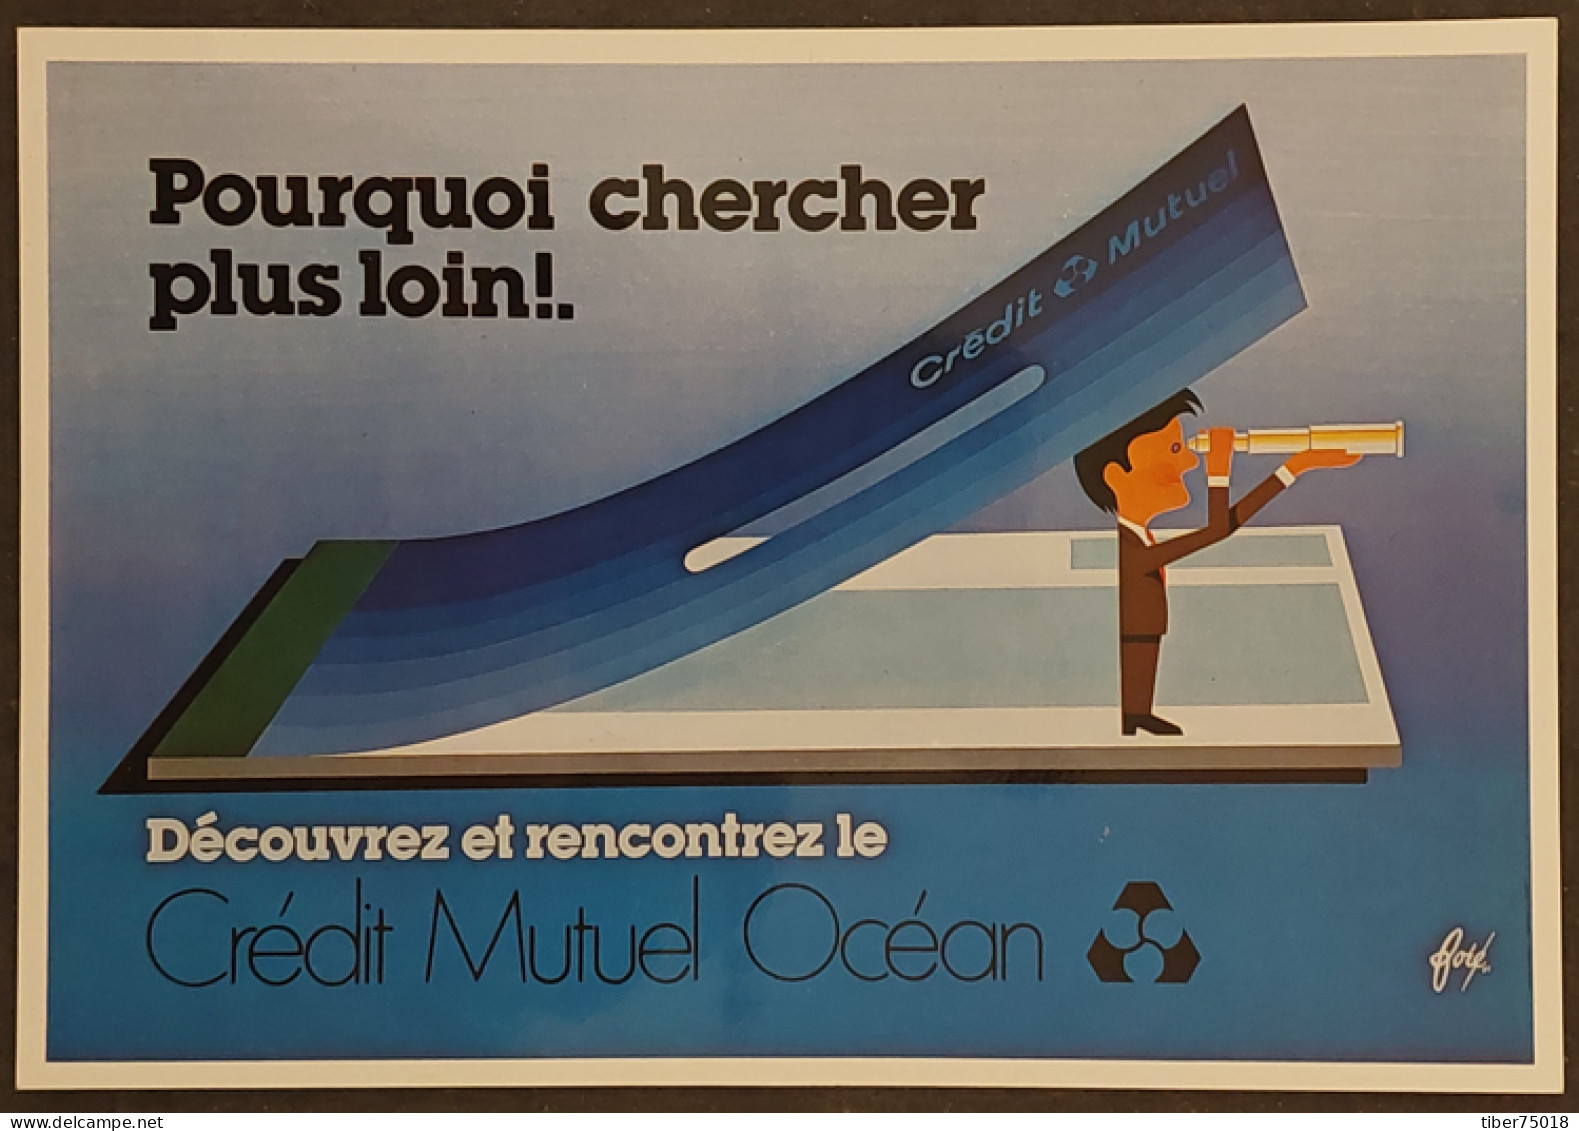 Carte Postale - Affiche Pour Le "Crédit Mutuel Océan" (1981) Illustration : Foré - Fore